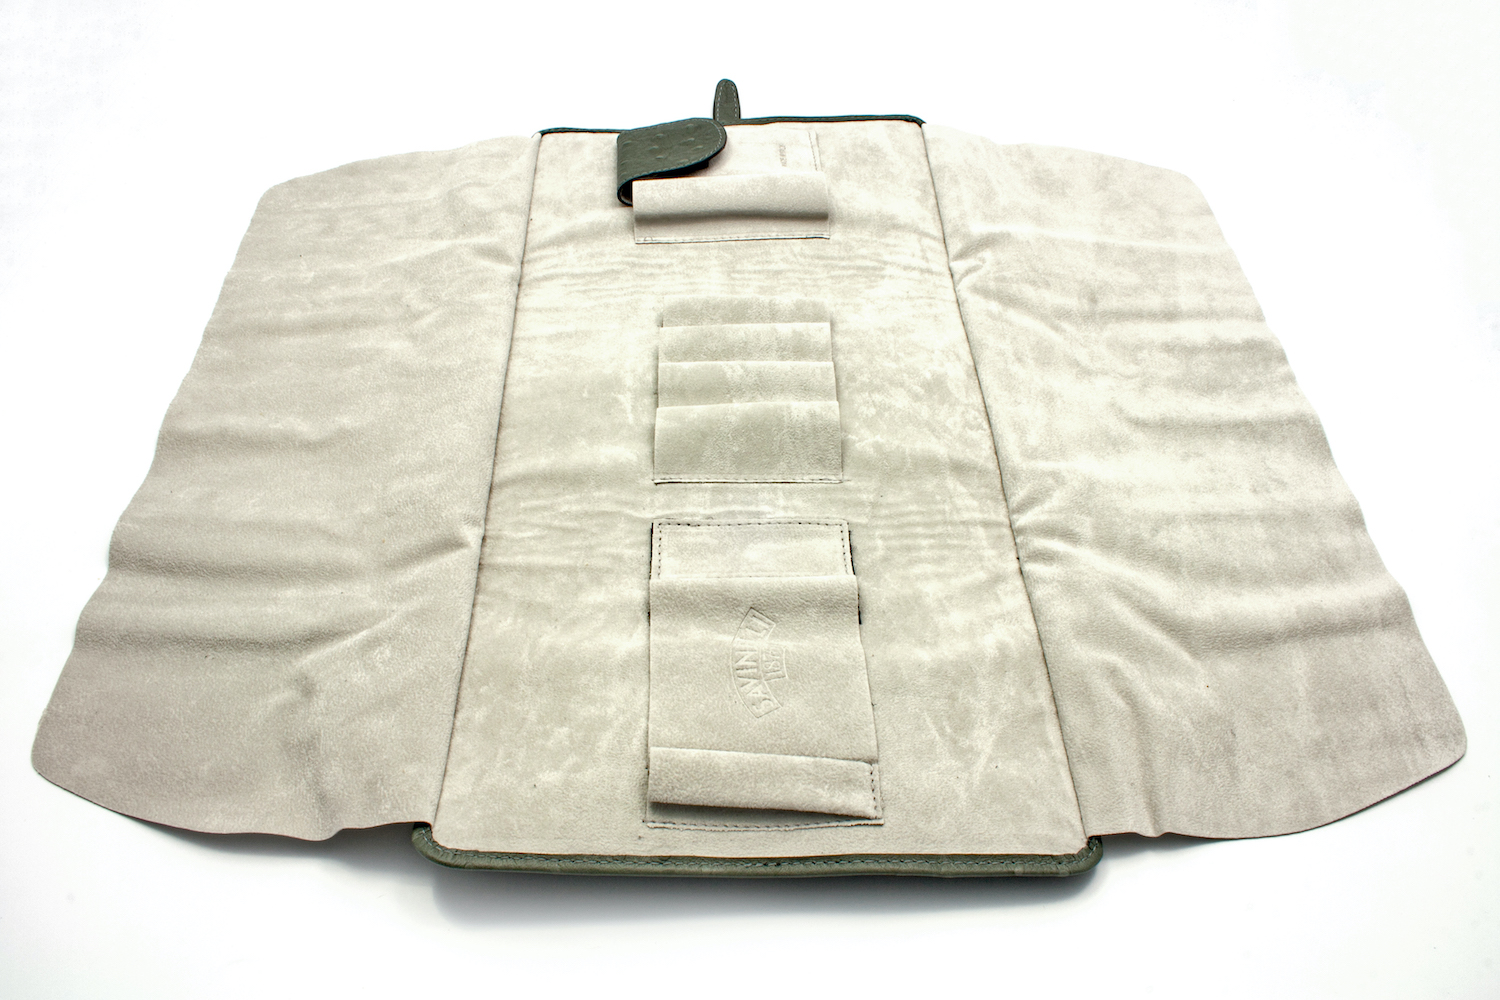 Savinelli Pipe Bag T660 Ostrich Grey